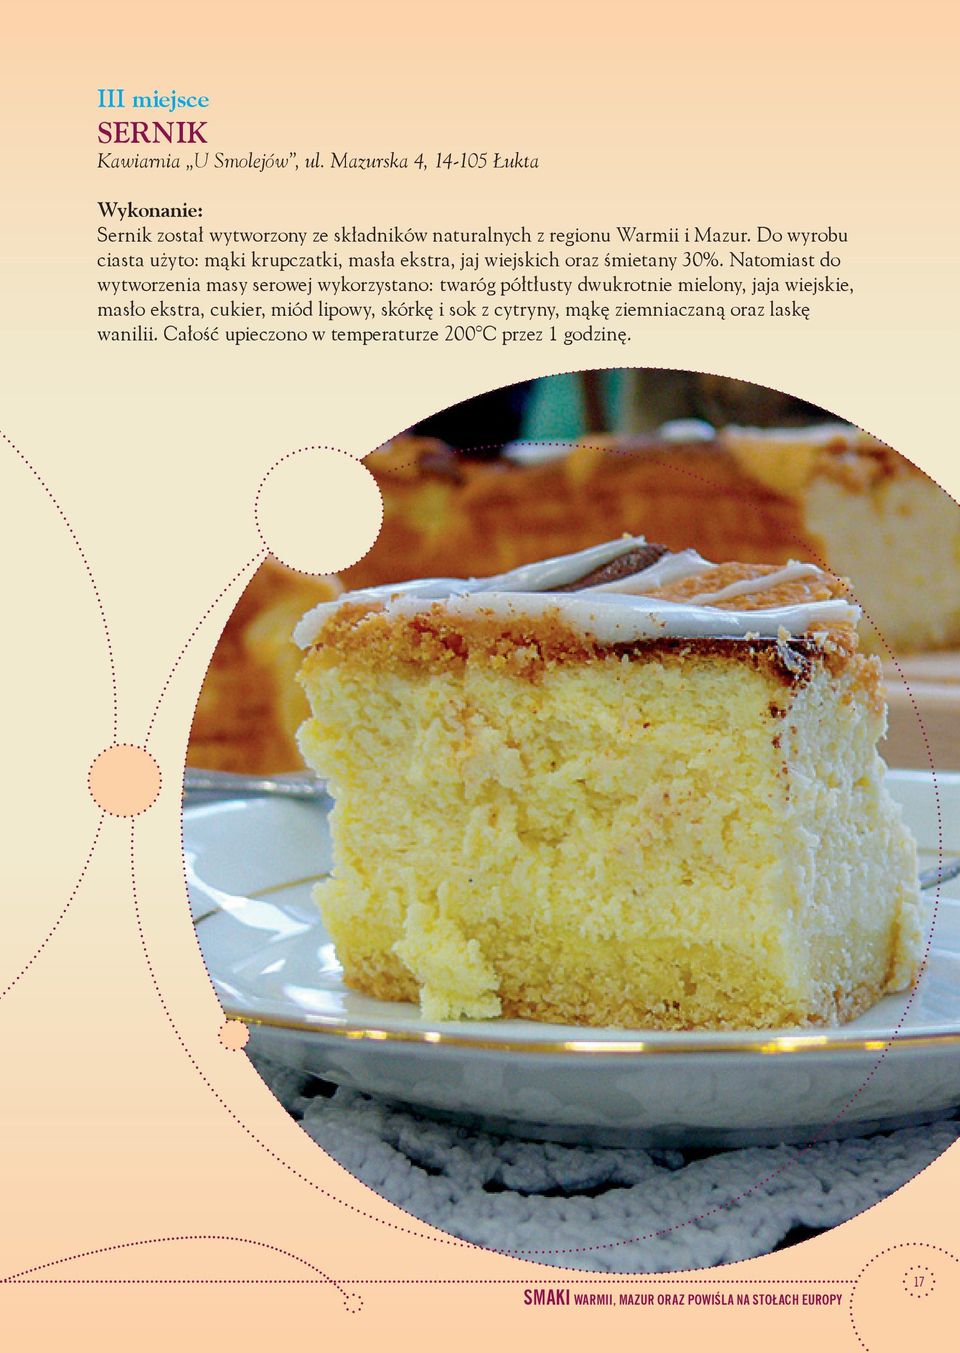 Do wyrobu ciasta użyto: mąki krupczatki, masła ekstra, jaj wiejskich oraz śmietany 30%.